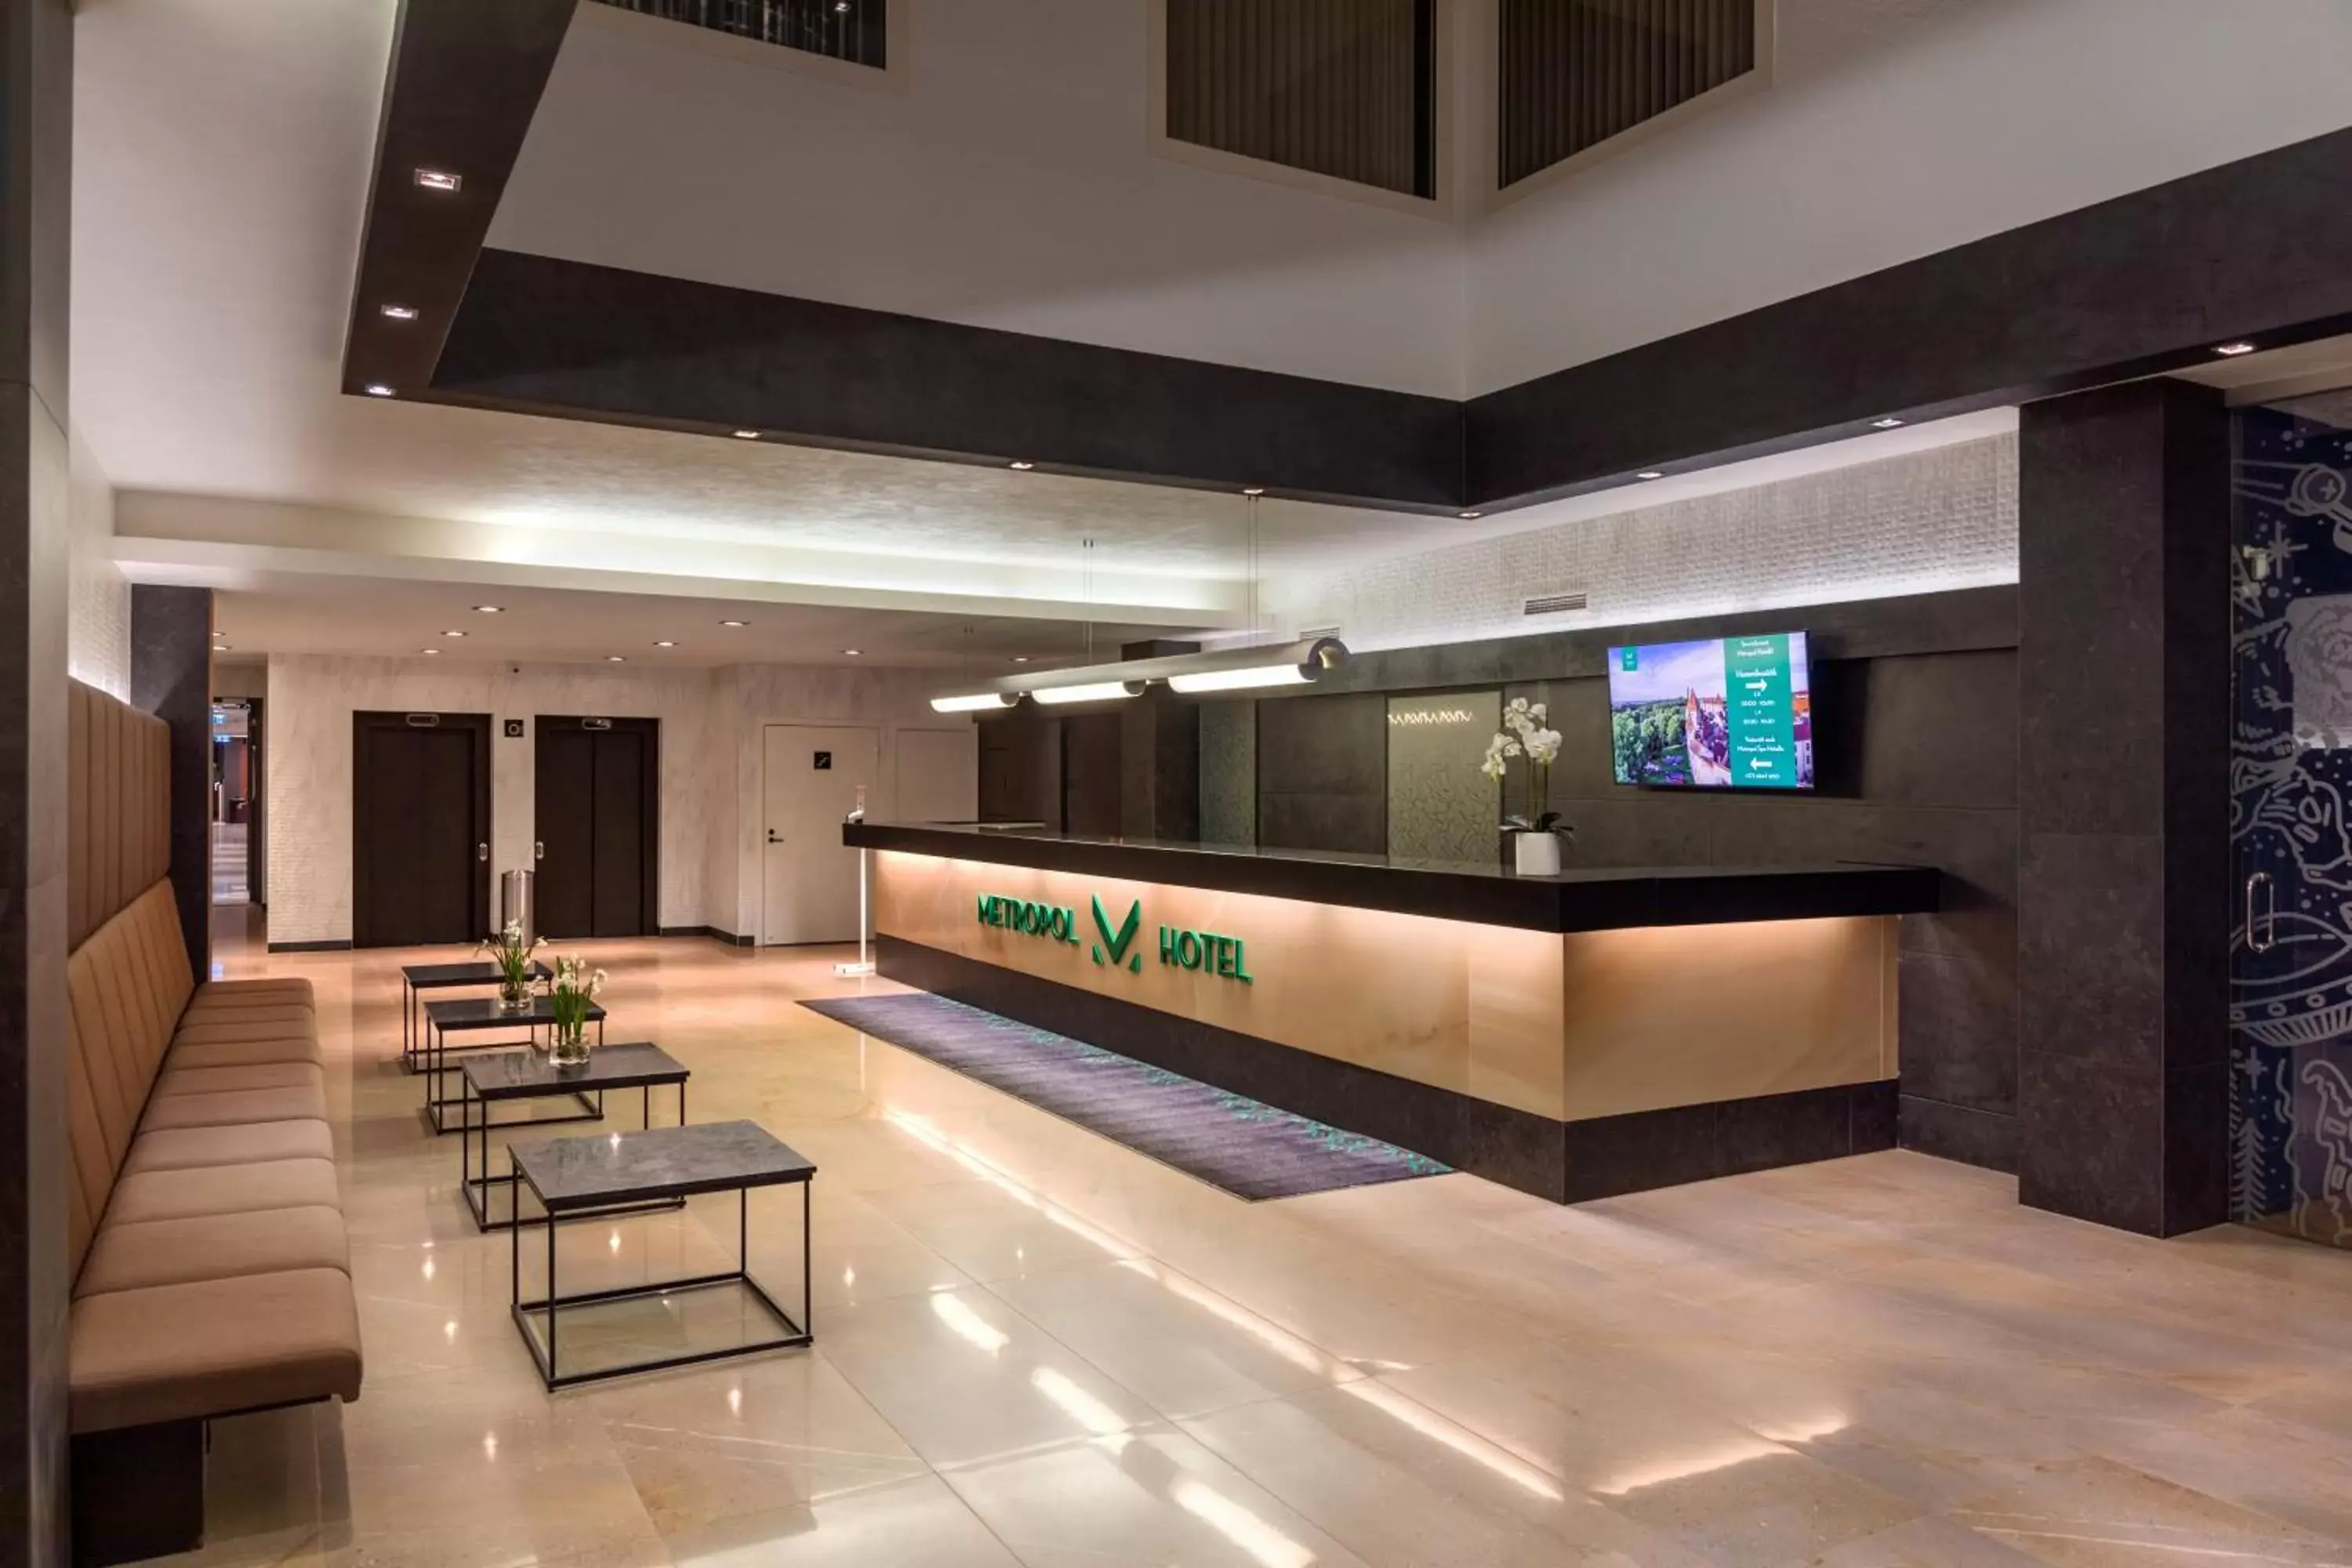 Lobby or reception, Lobby/Reception in Metropol Hotel